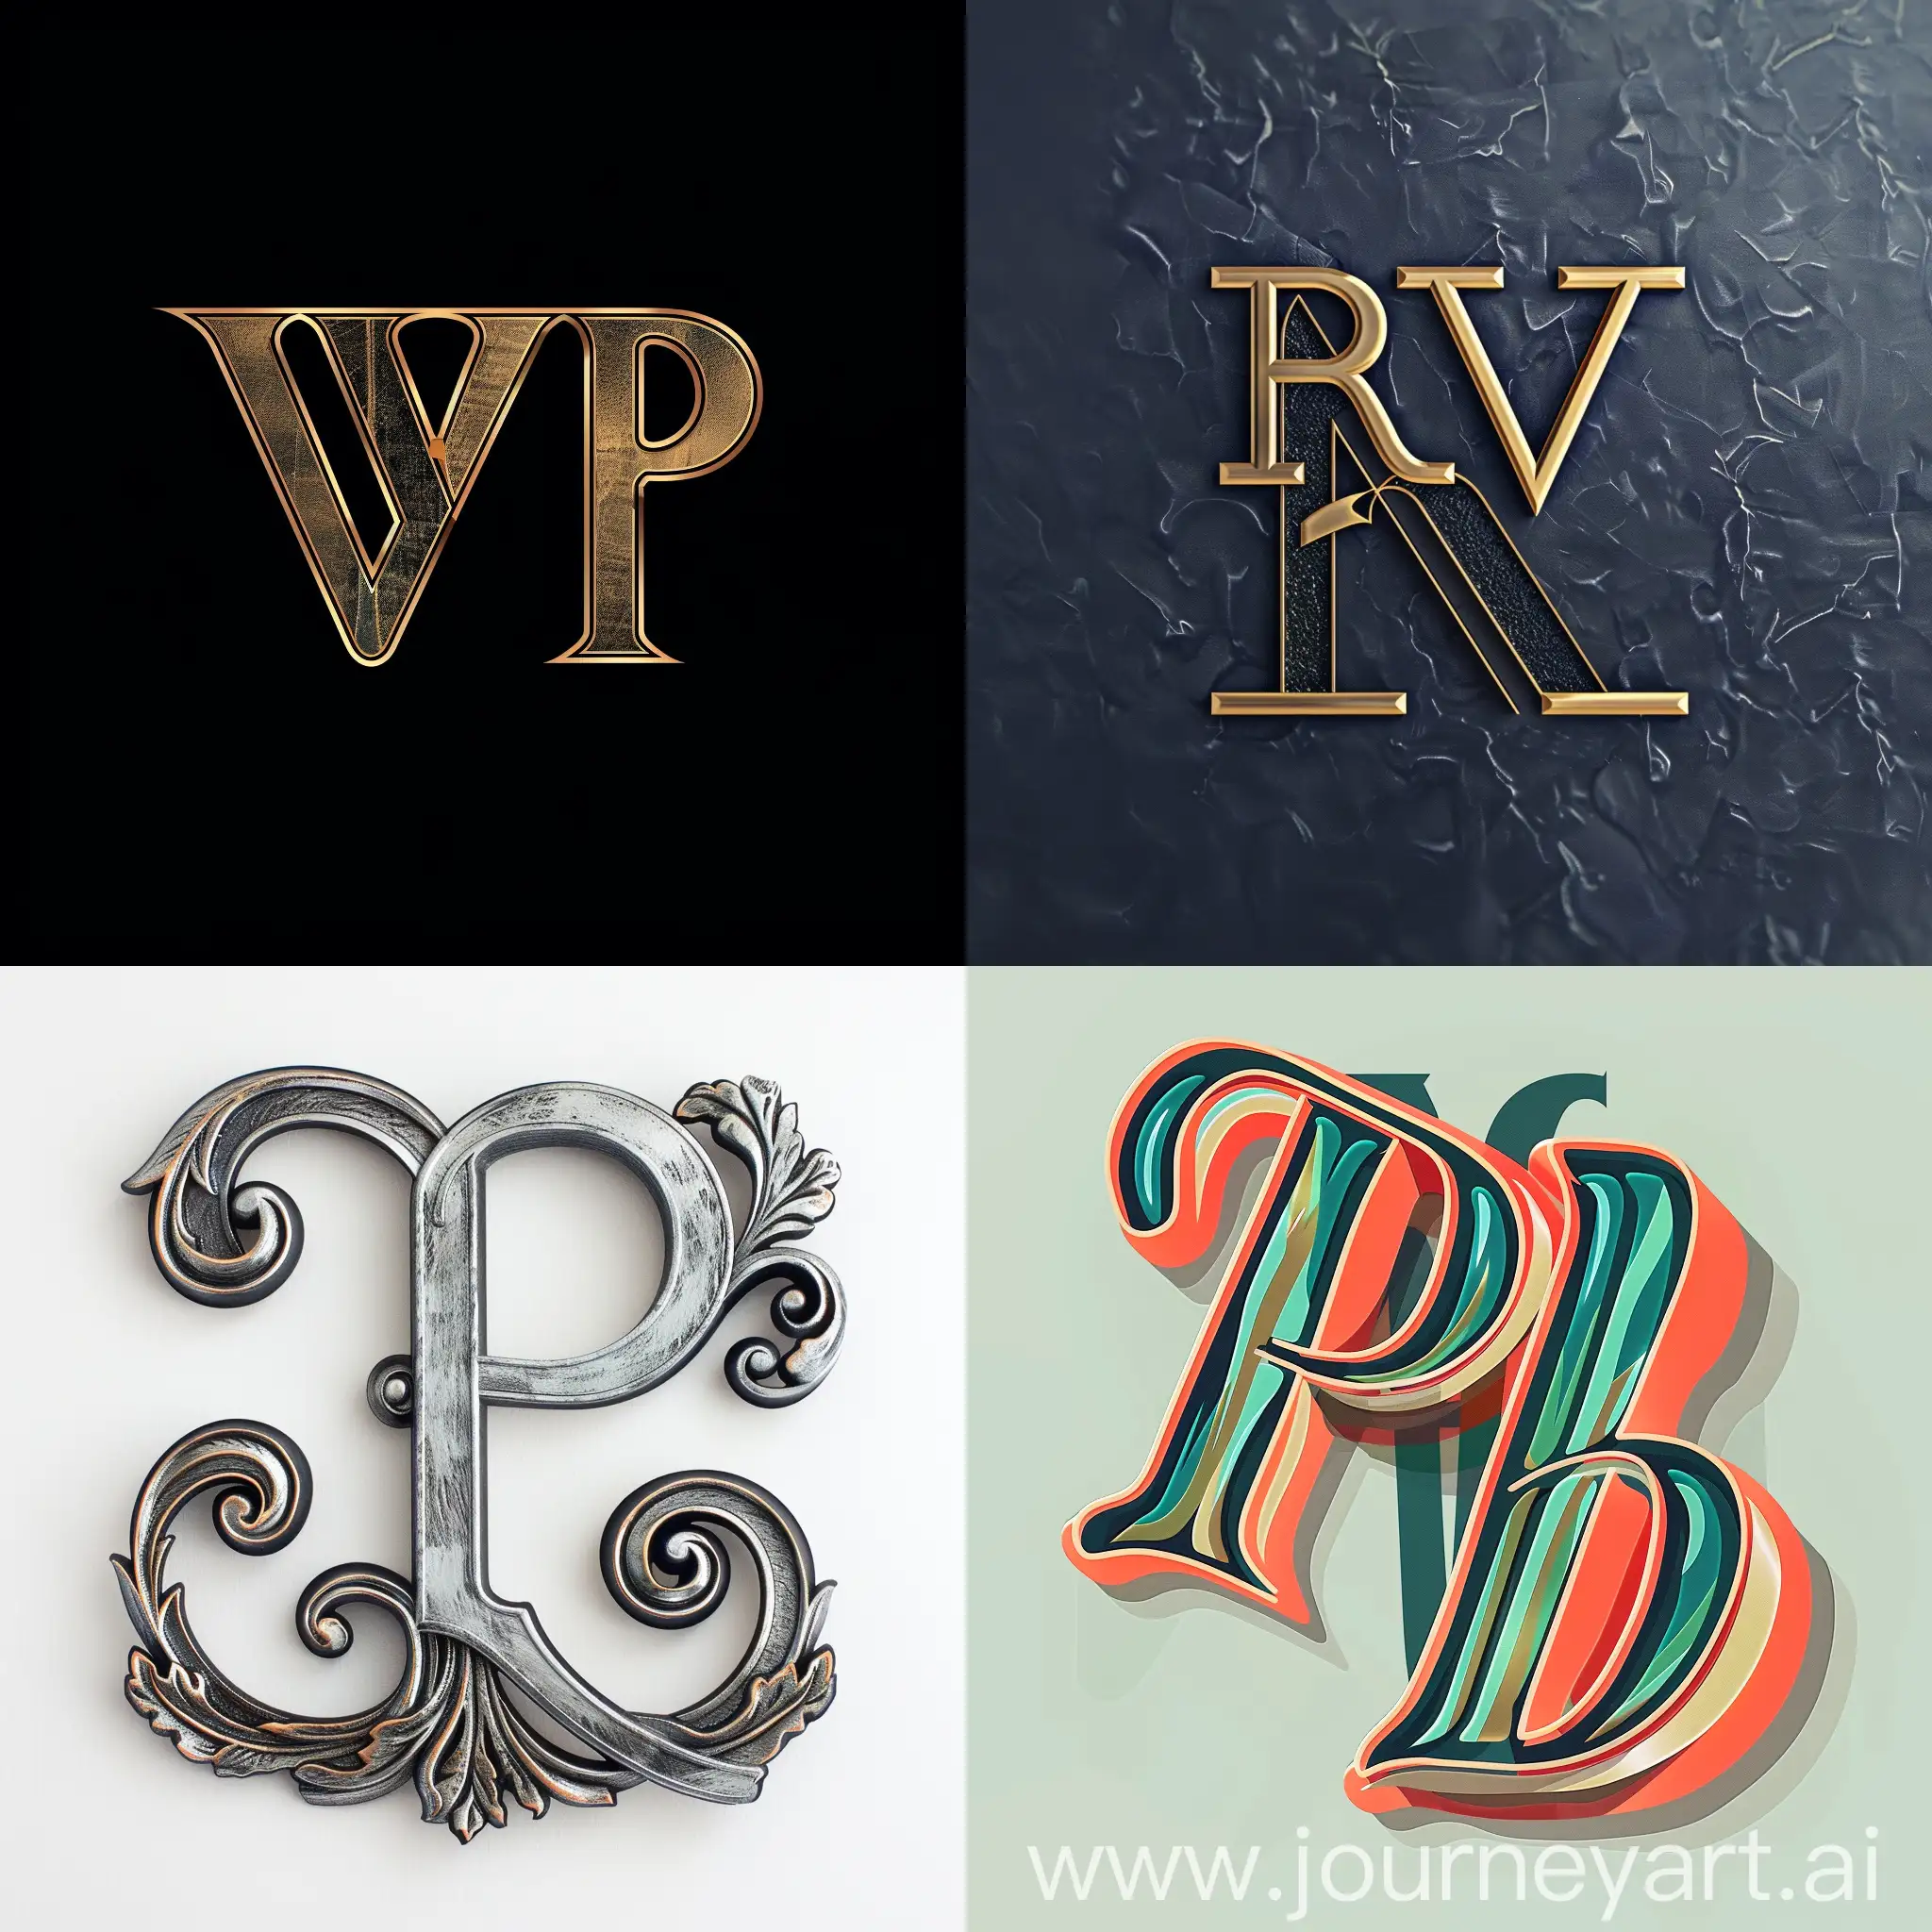 Elegant-Monogram-Design-Featuring-Letters-P-V-and-R